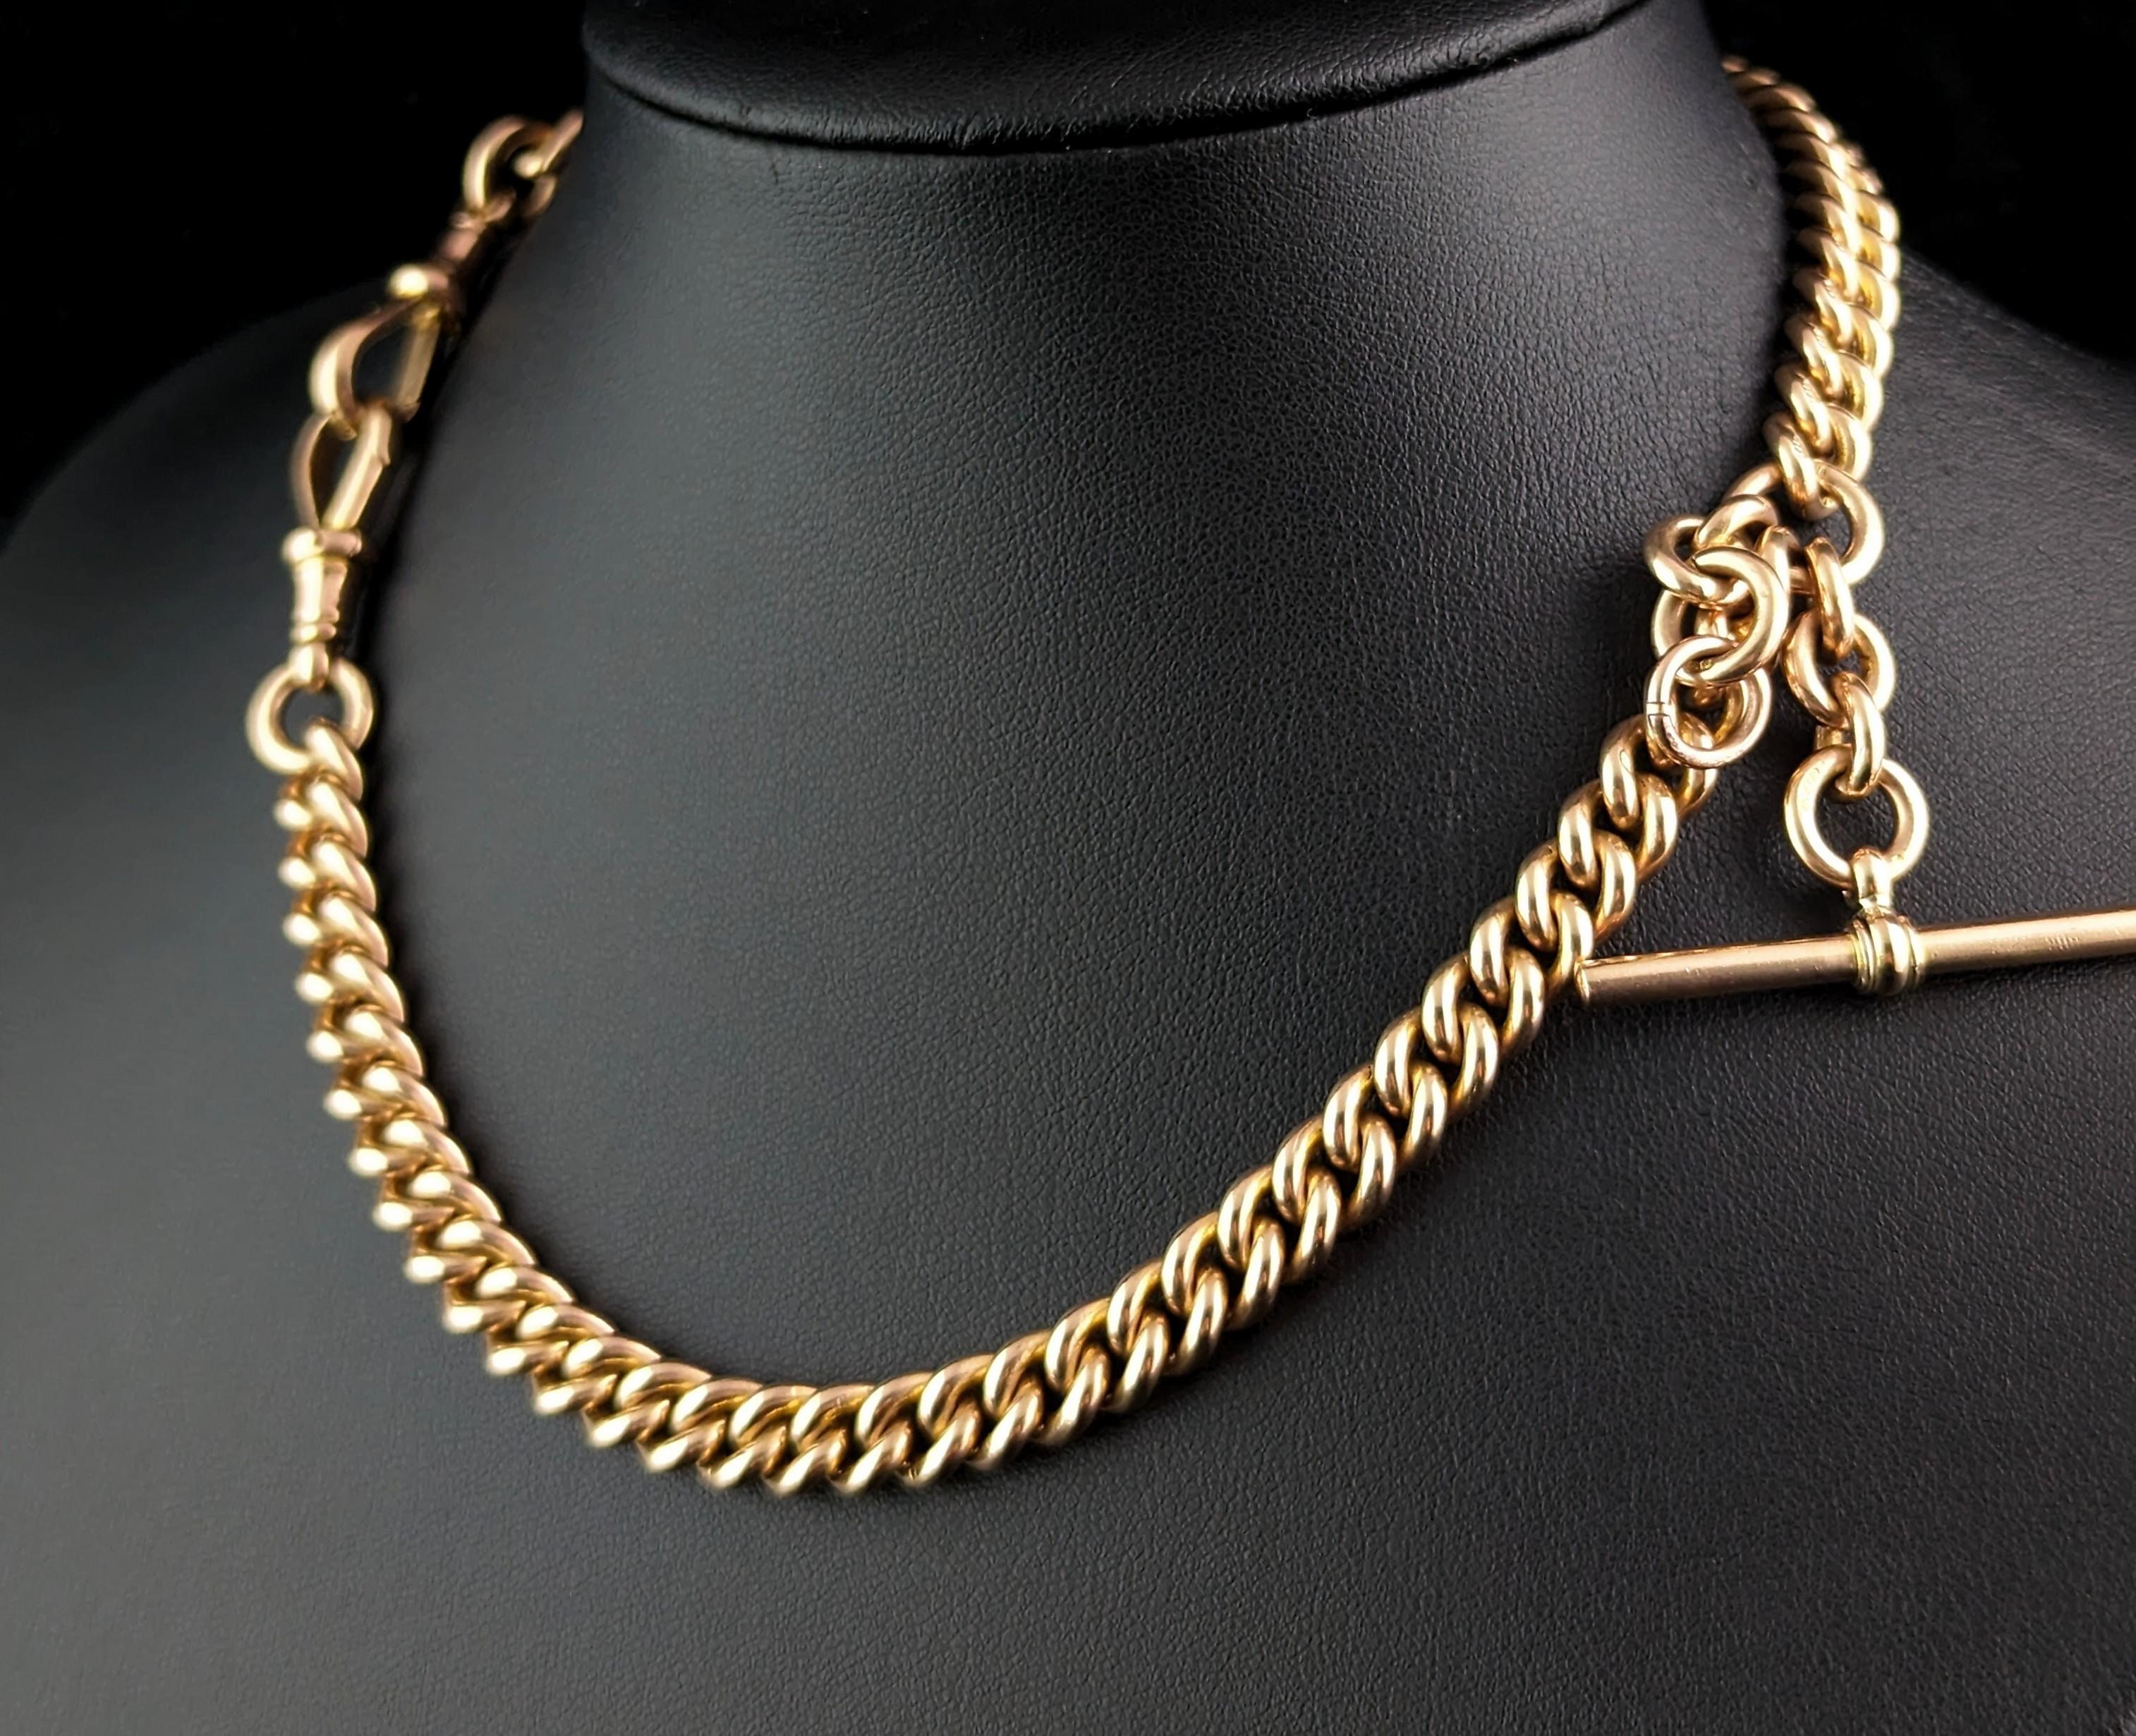 Antique 9k gold Albert chain necklace, watch chain, Heavy  6